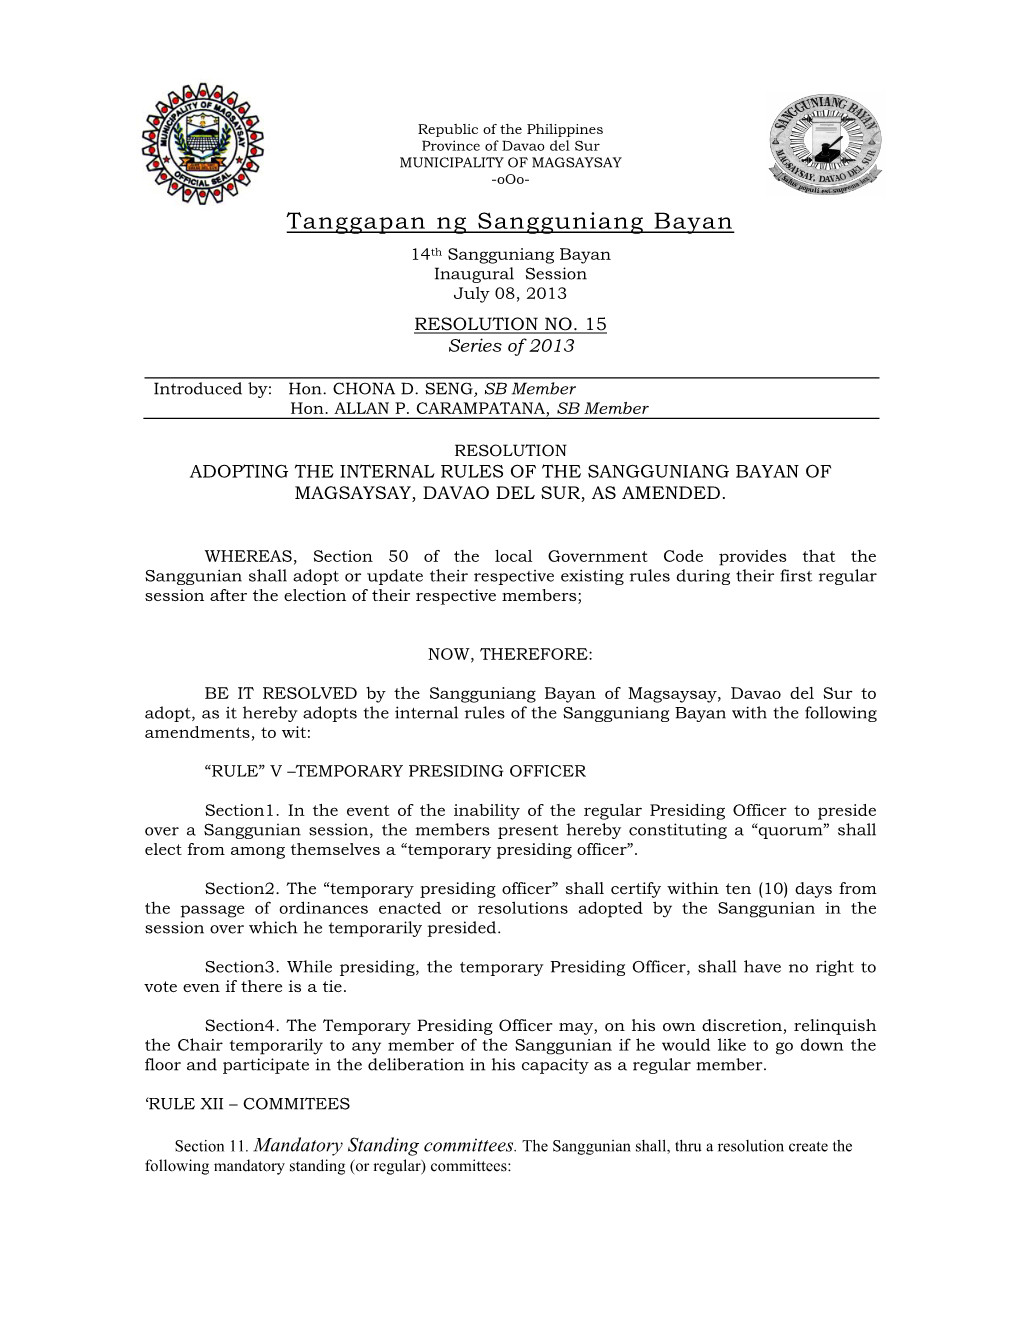 Resolution Adopting the Internal Rules of the Sangguniang Bayan of Magsaysay, Davao Del Sur, As Amended